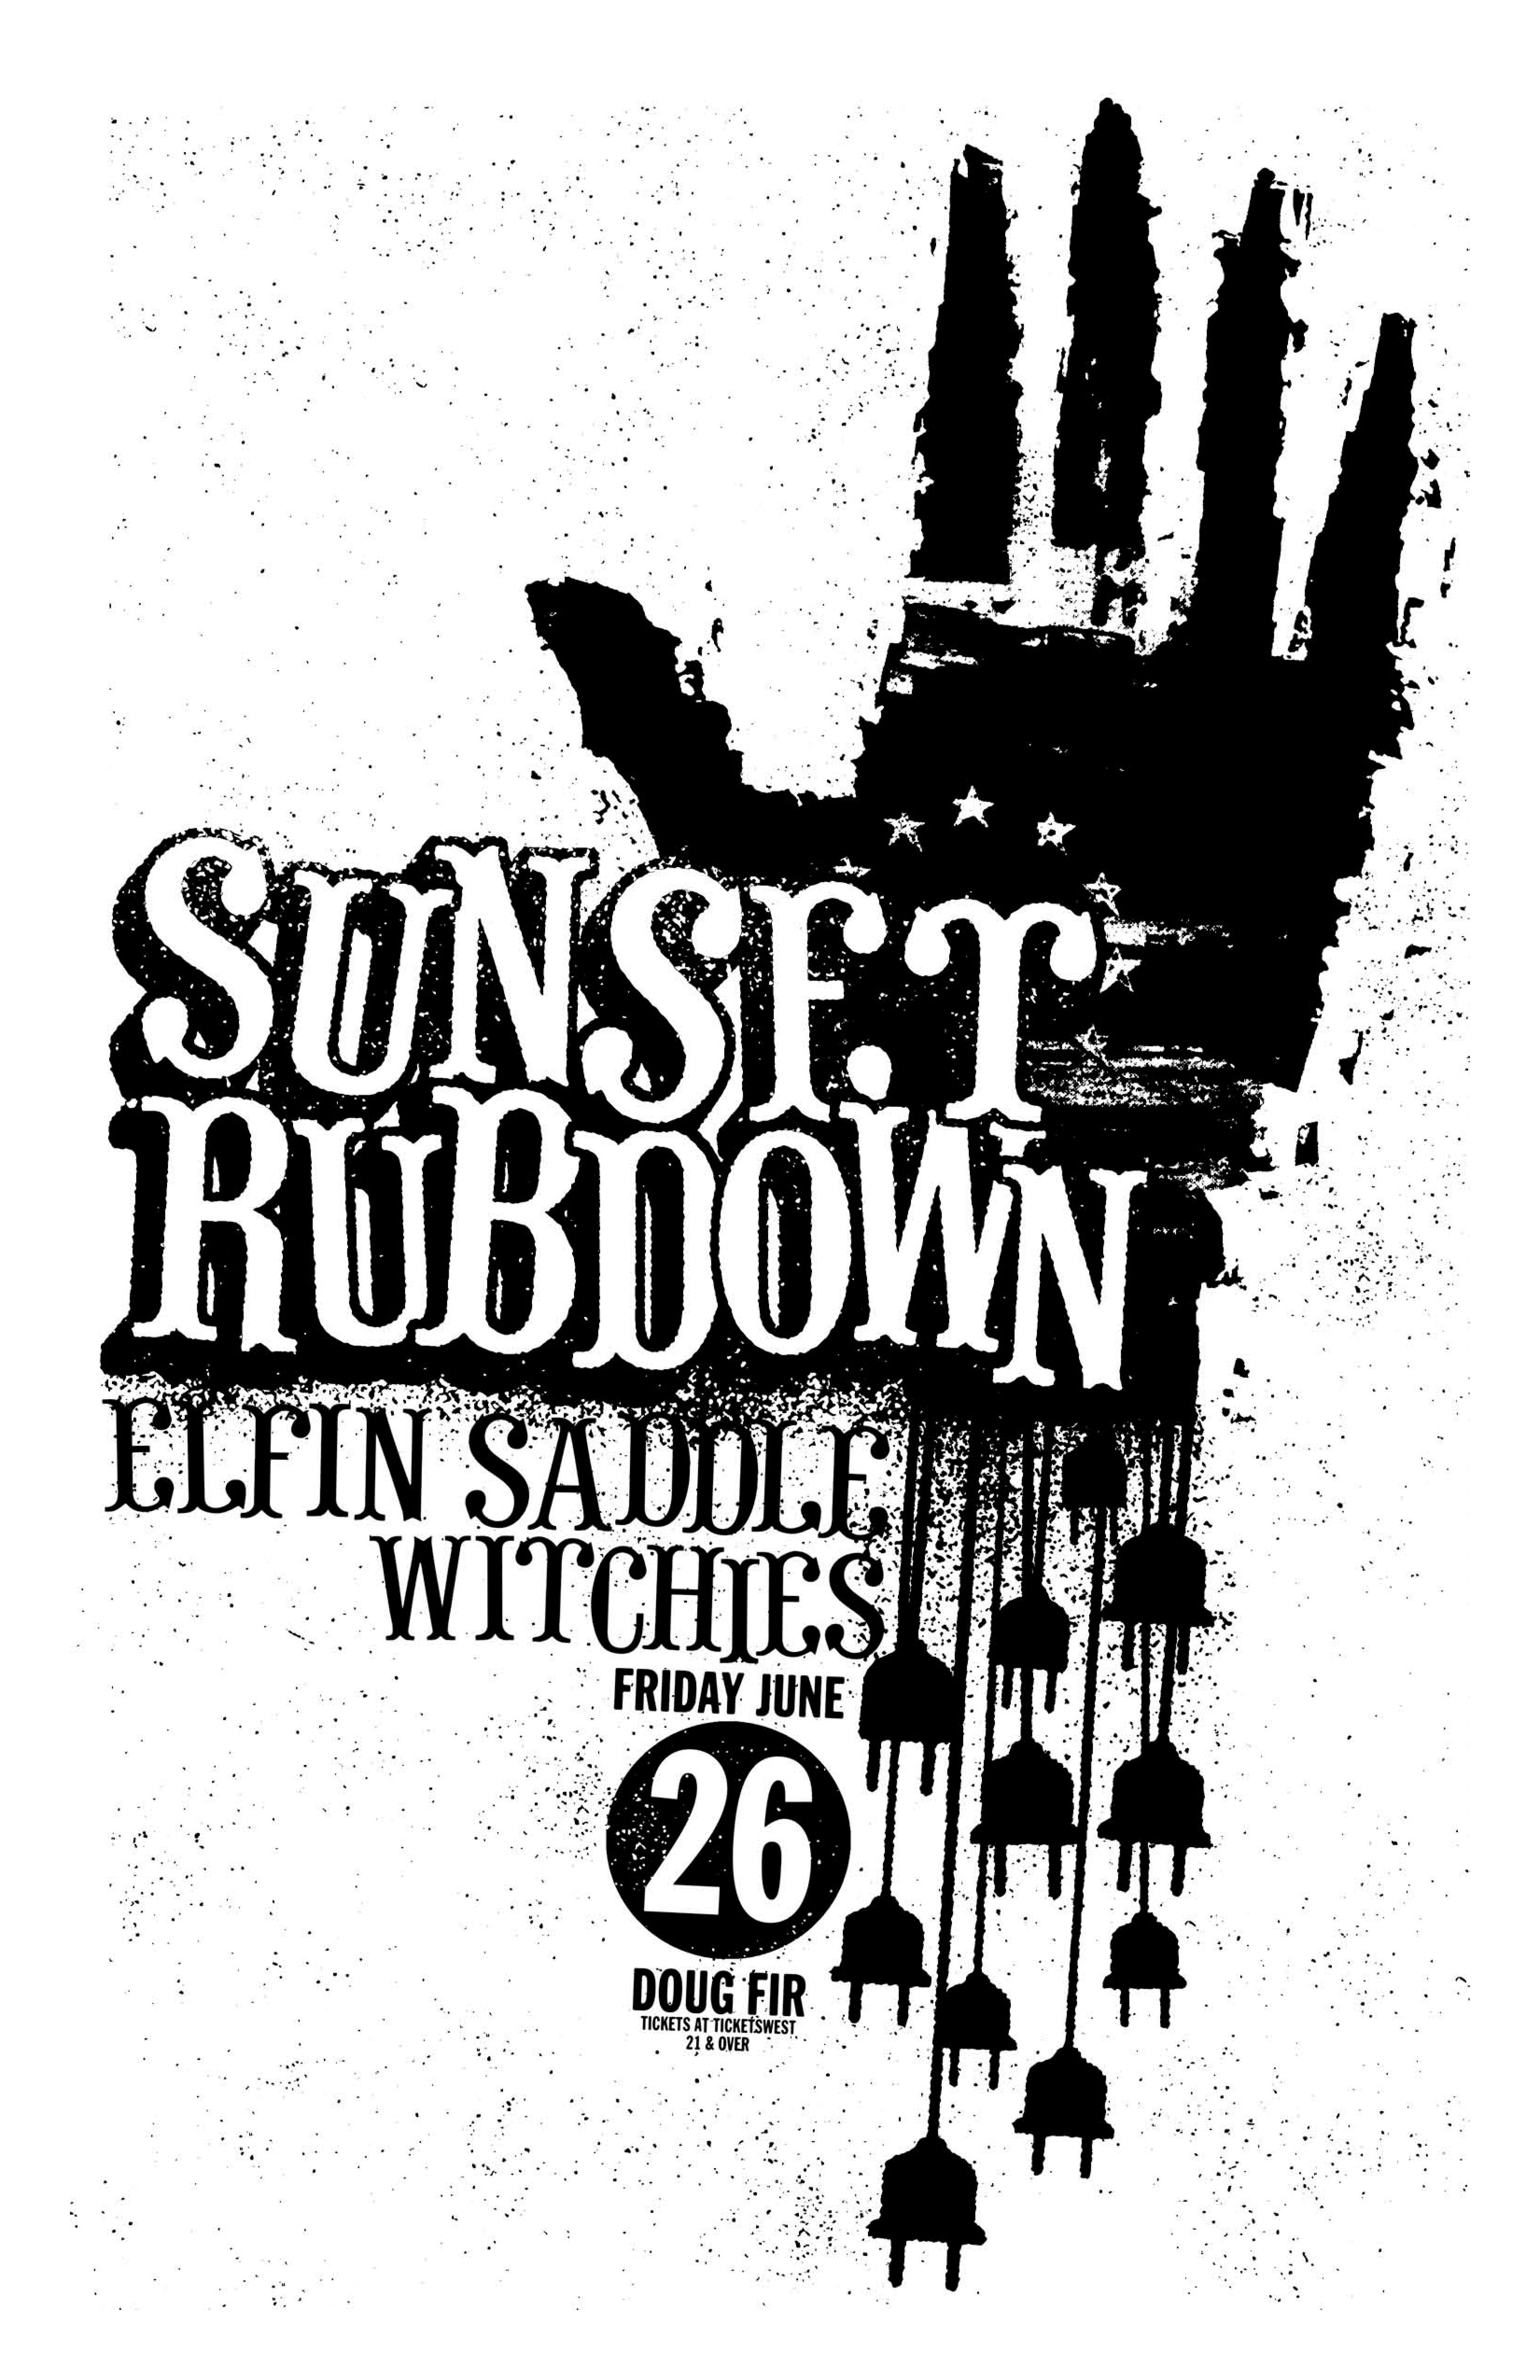 MXP-141.12 Sunset Rubdown 2009 Doug Fir  Jun 26 Concert Poster